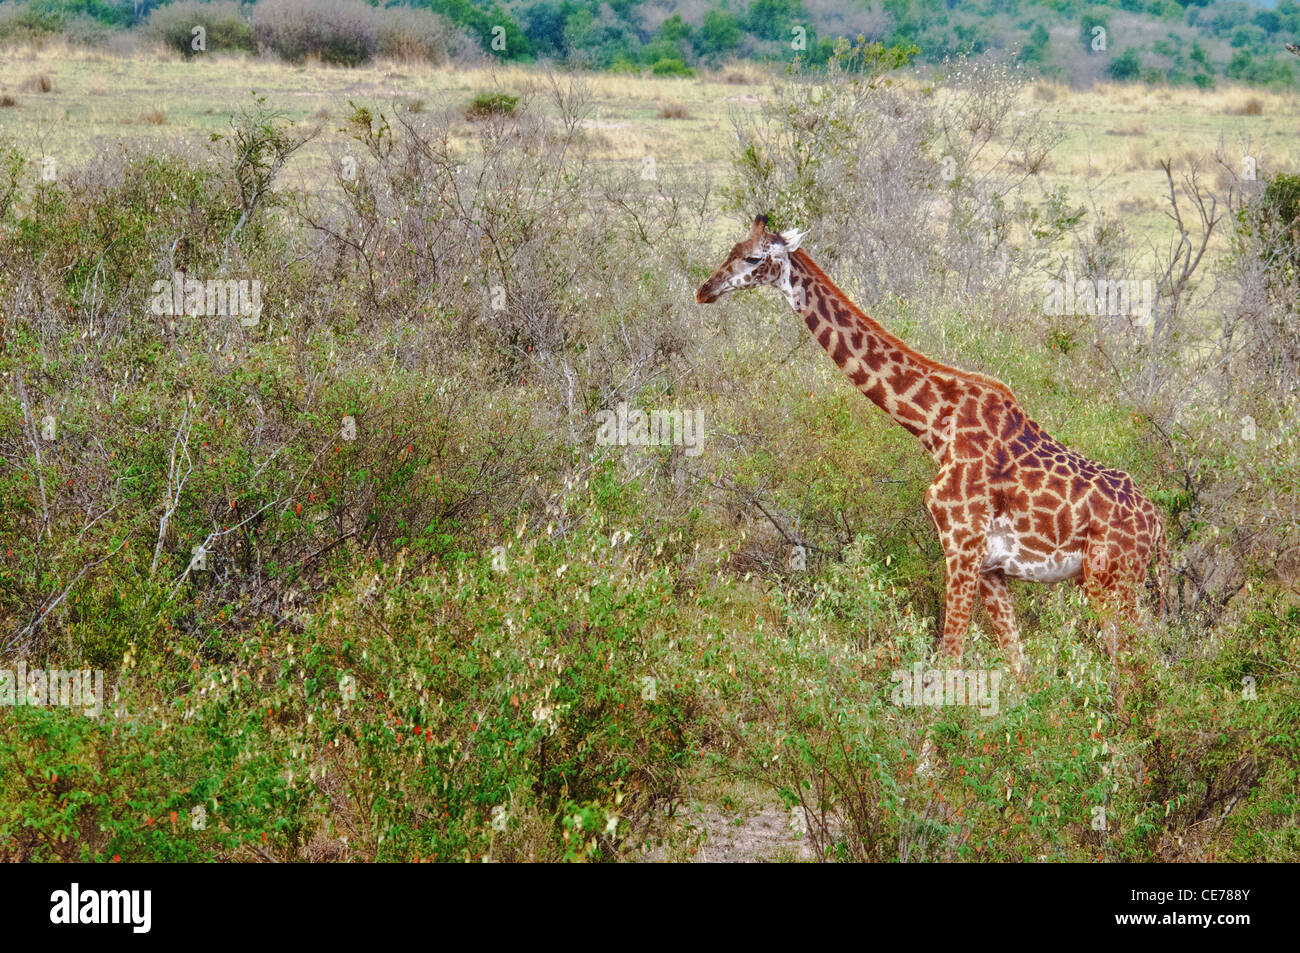 Masai Giraffe, Giraffa camelopardalis, Masai Mara National Reserve, Kenya, Africa Stock Photo